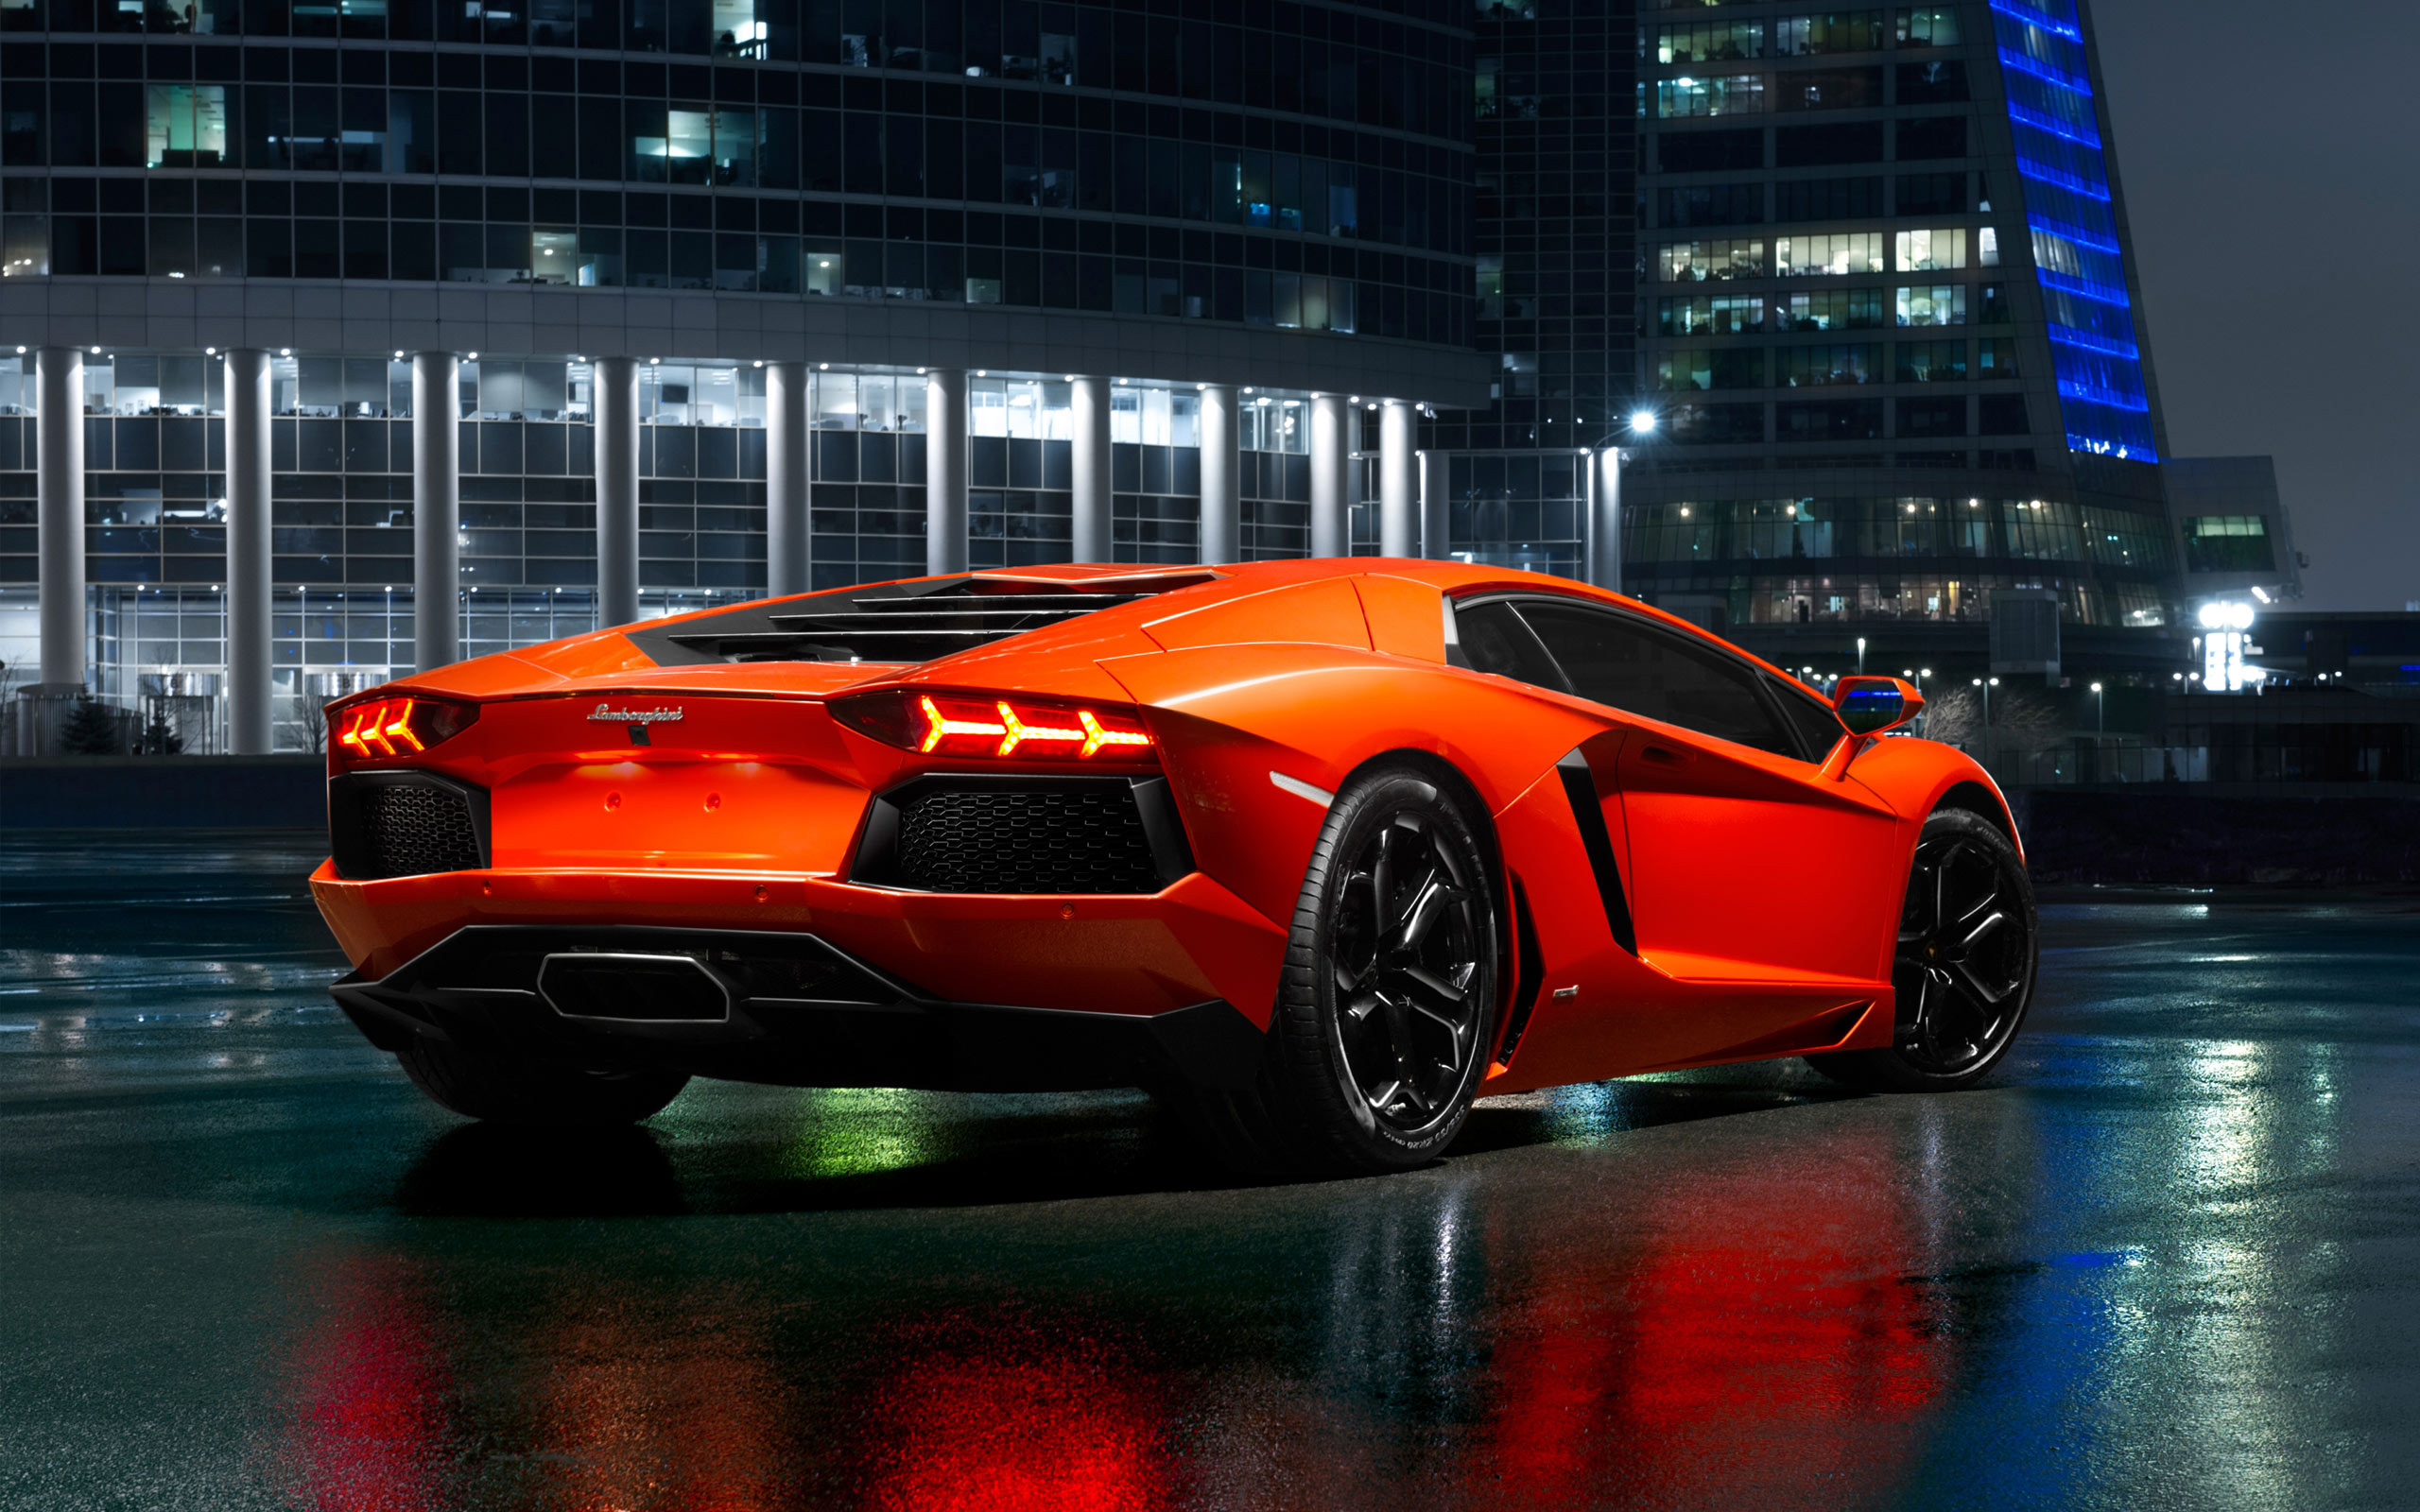 Lamborghini wallpaper download - specialistsiop